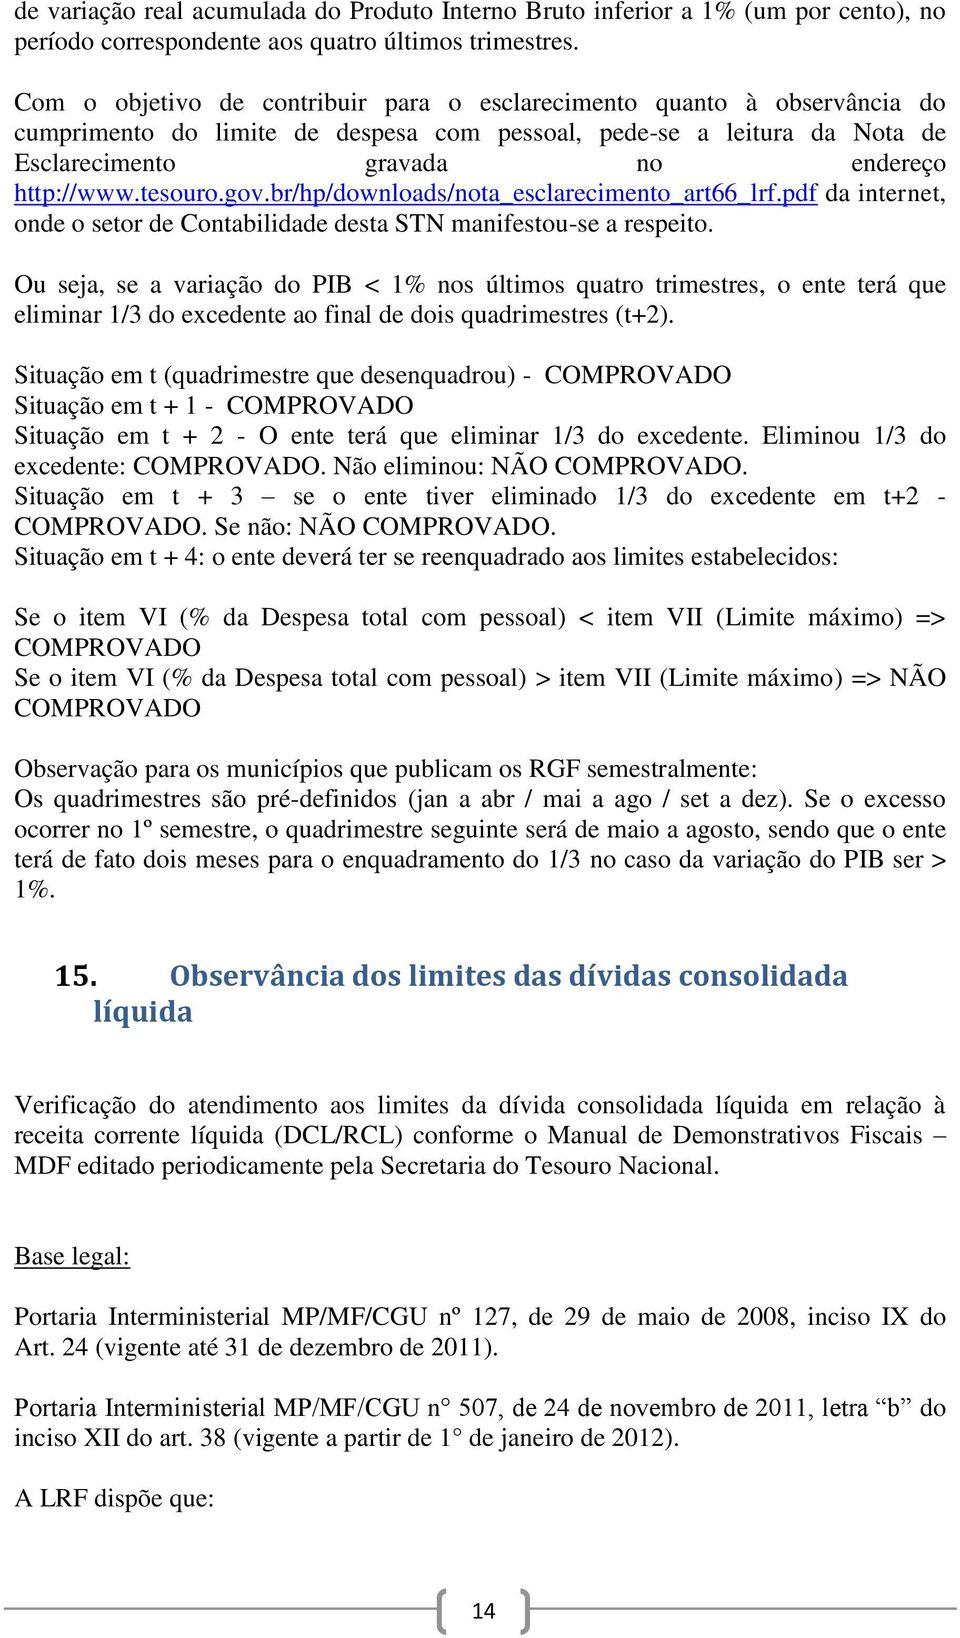 tesouro.gov.br/hp/downloads/nota_esclarecimento_art66_lrf.pdf da internet, onde o setor de Contabilidade desta STN manifestou-se a respeito.